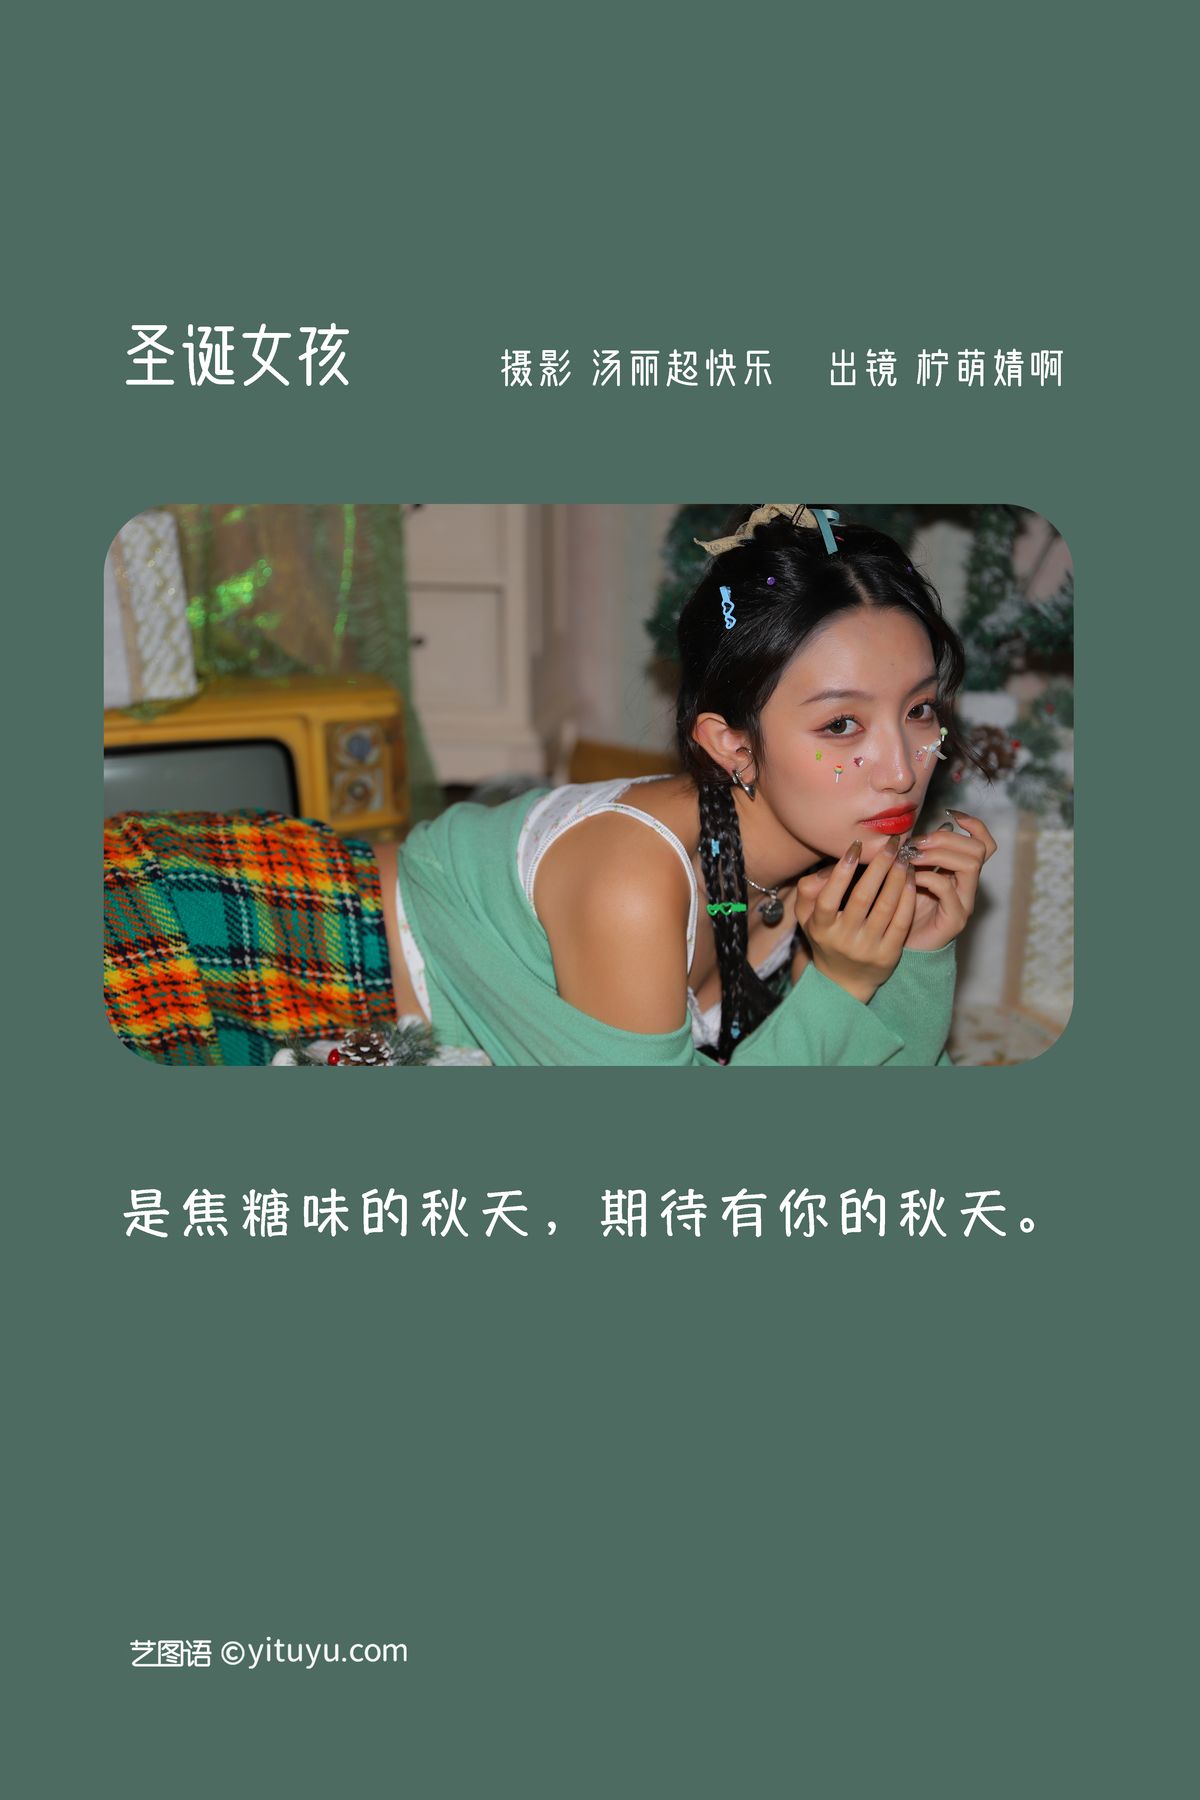 YiTuYu艺图语 Vol 3032 Ning Meng Jing A 0001 4681631567.jpg